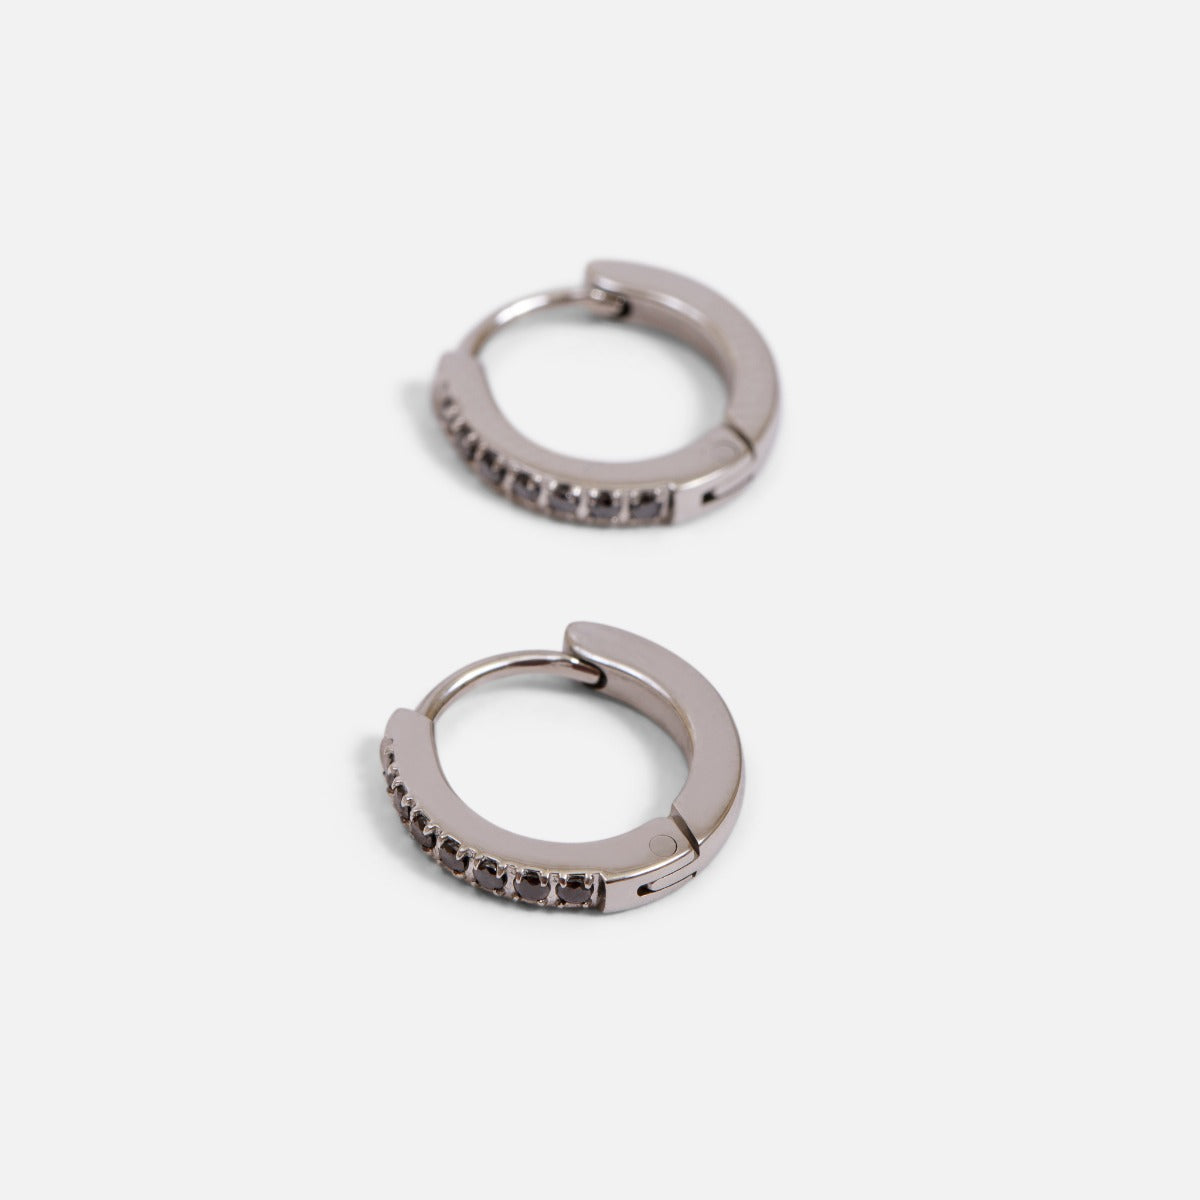 Stainless steel huggies earrings and glittering stones